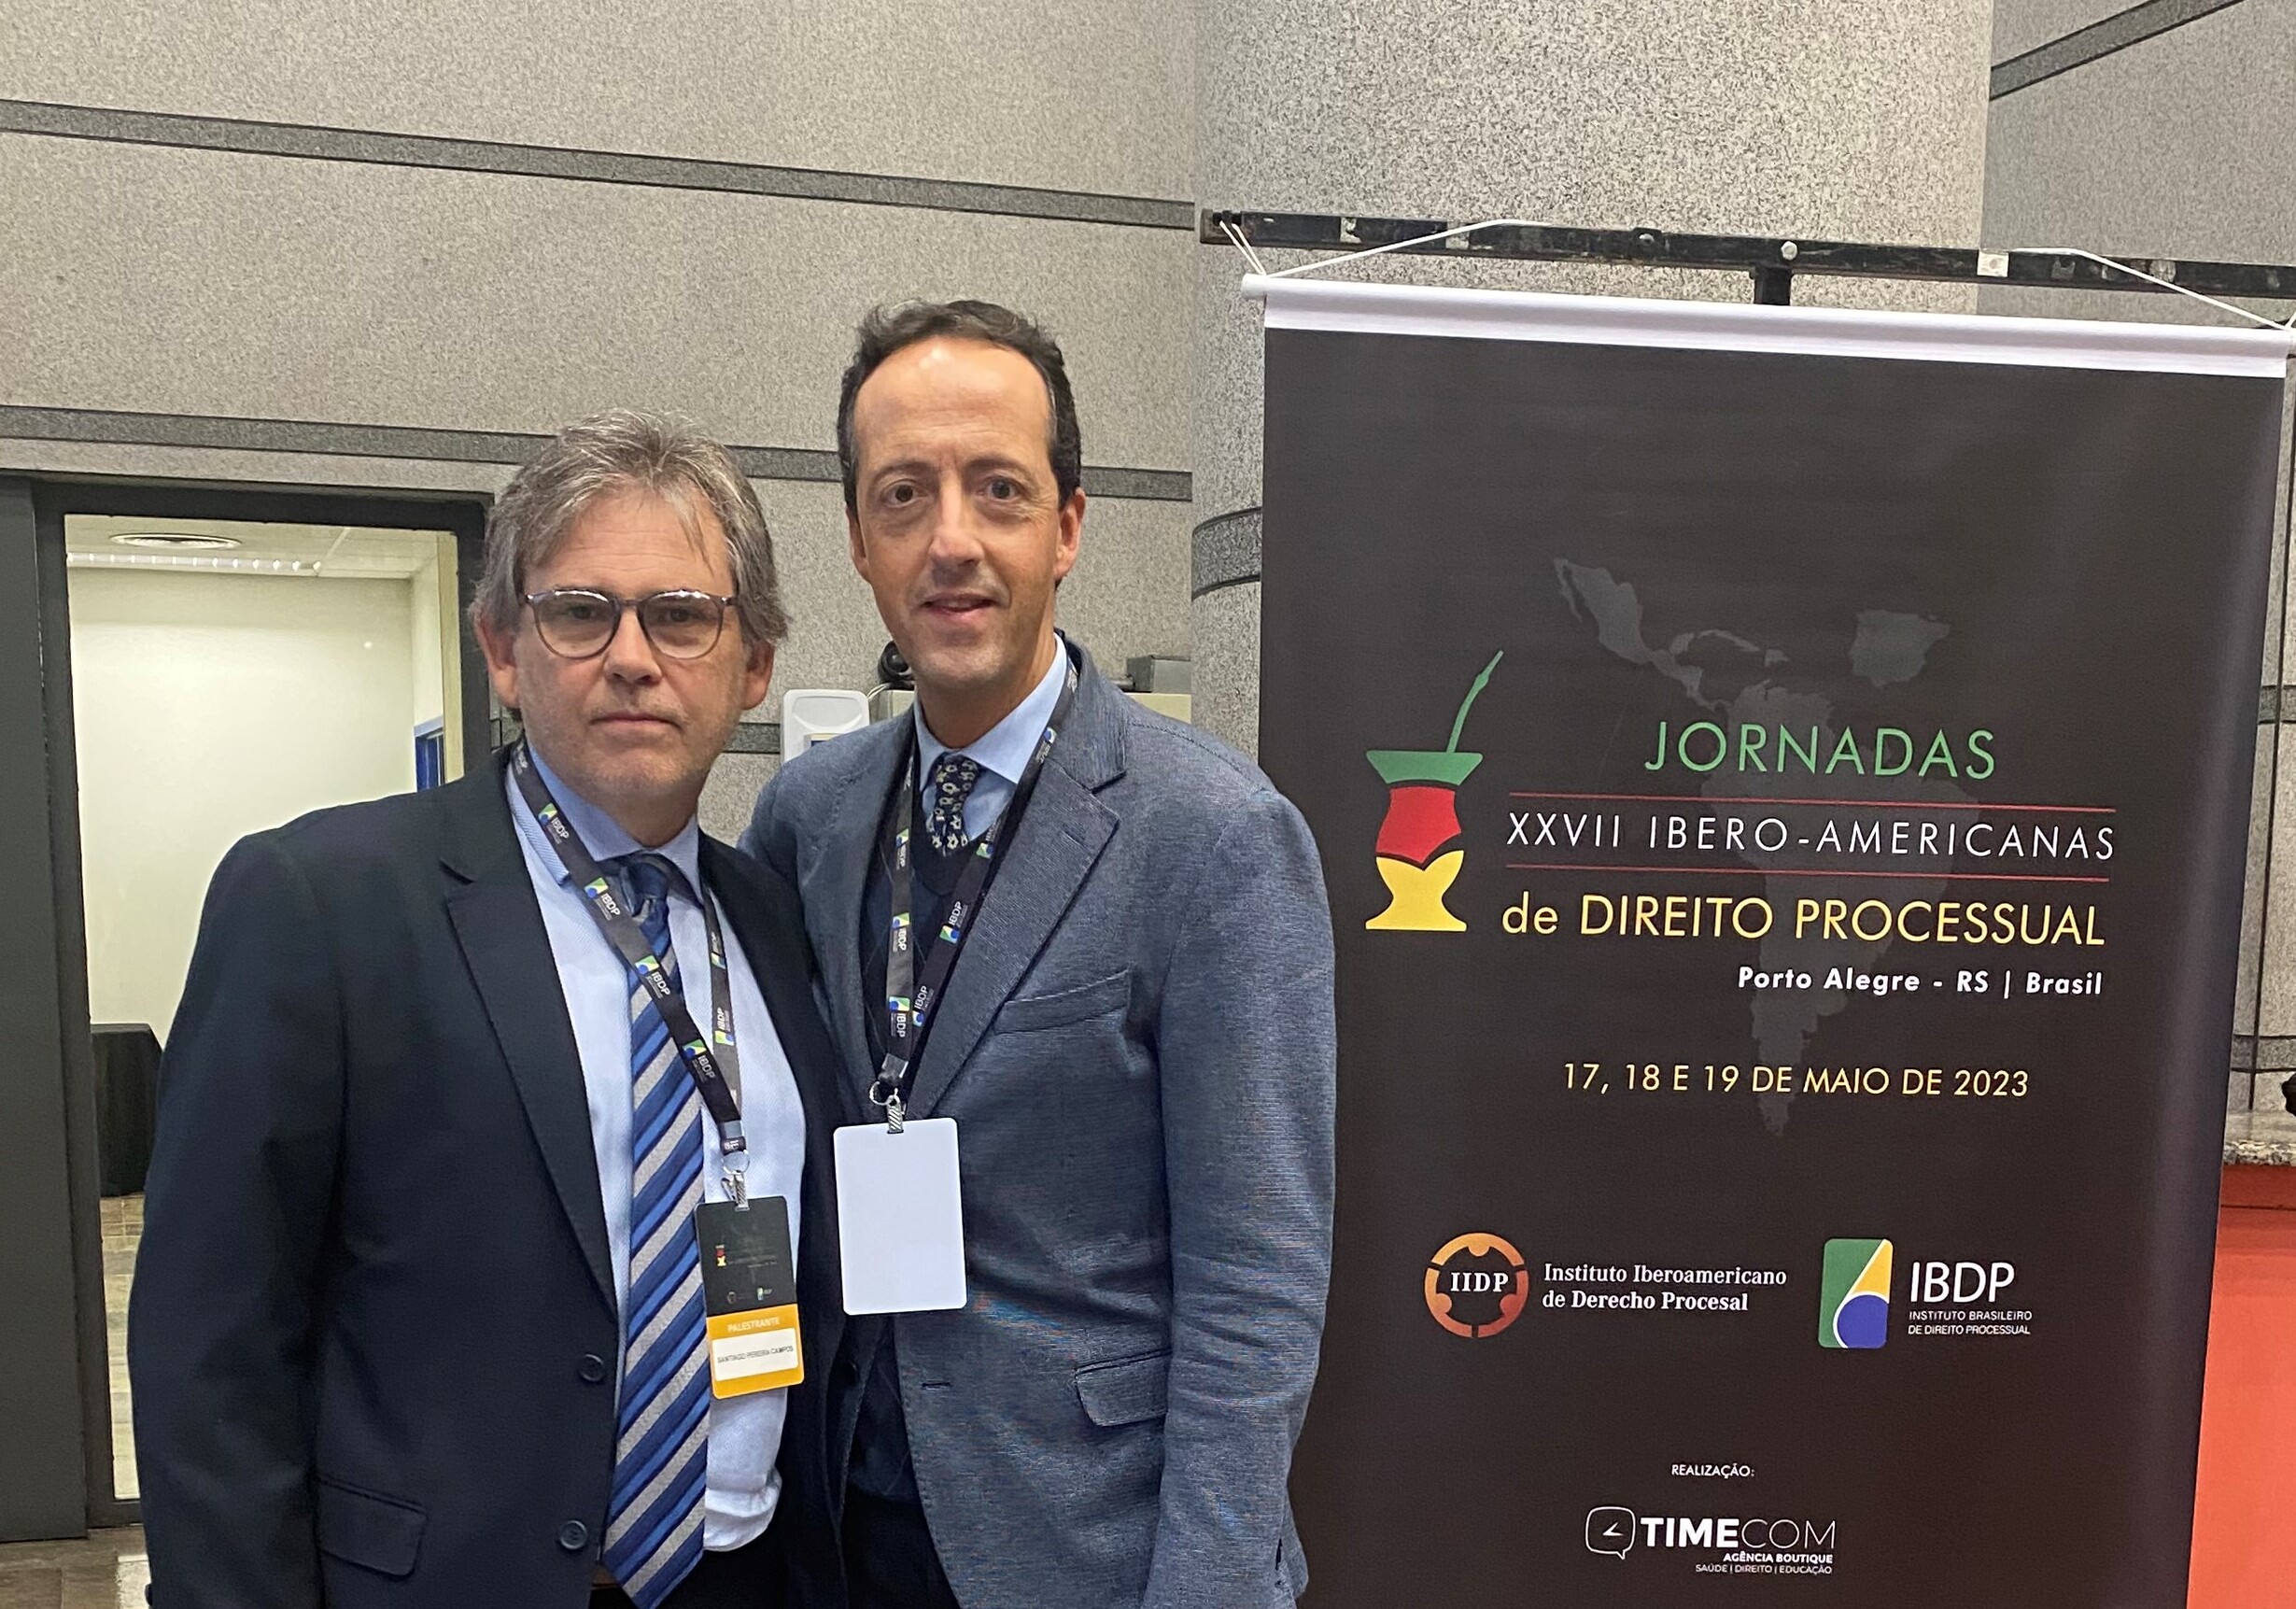 Joan Picó i Junoy, Catedràtic de Dret Processal de la UPF, escollit Vicepresident del Instituto Iberoamericano de Derecho Procesal